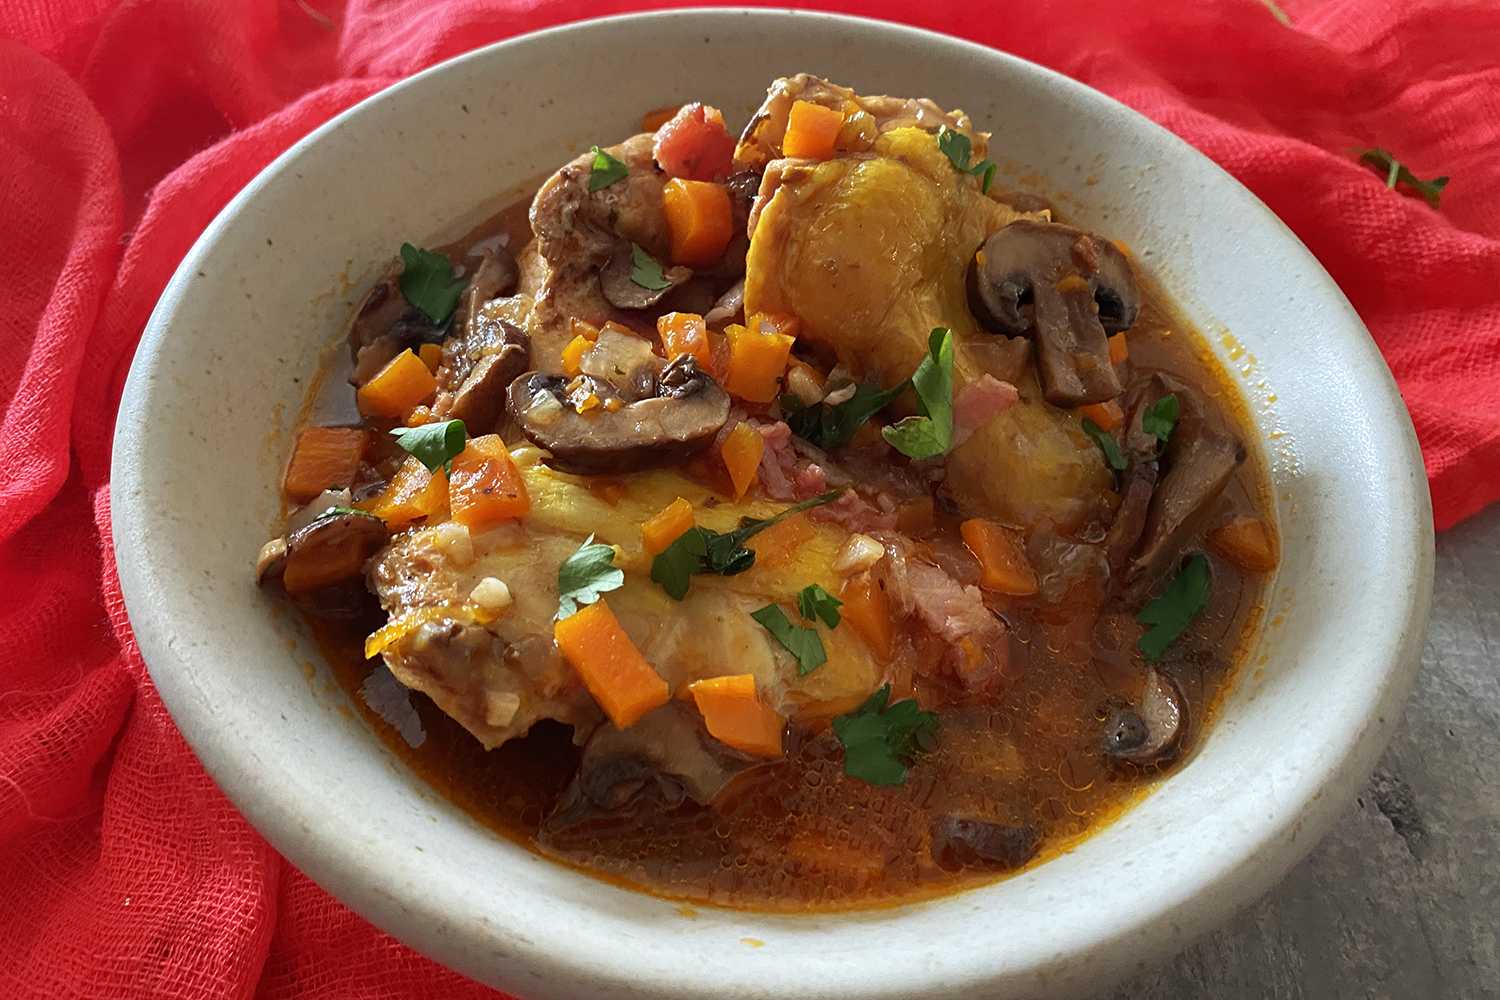 Hühnerfleisch in einer braunen Suppe gefüllt mit Karottenwürfeln, Champignons, Speck und gehackter Petersilie